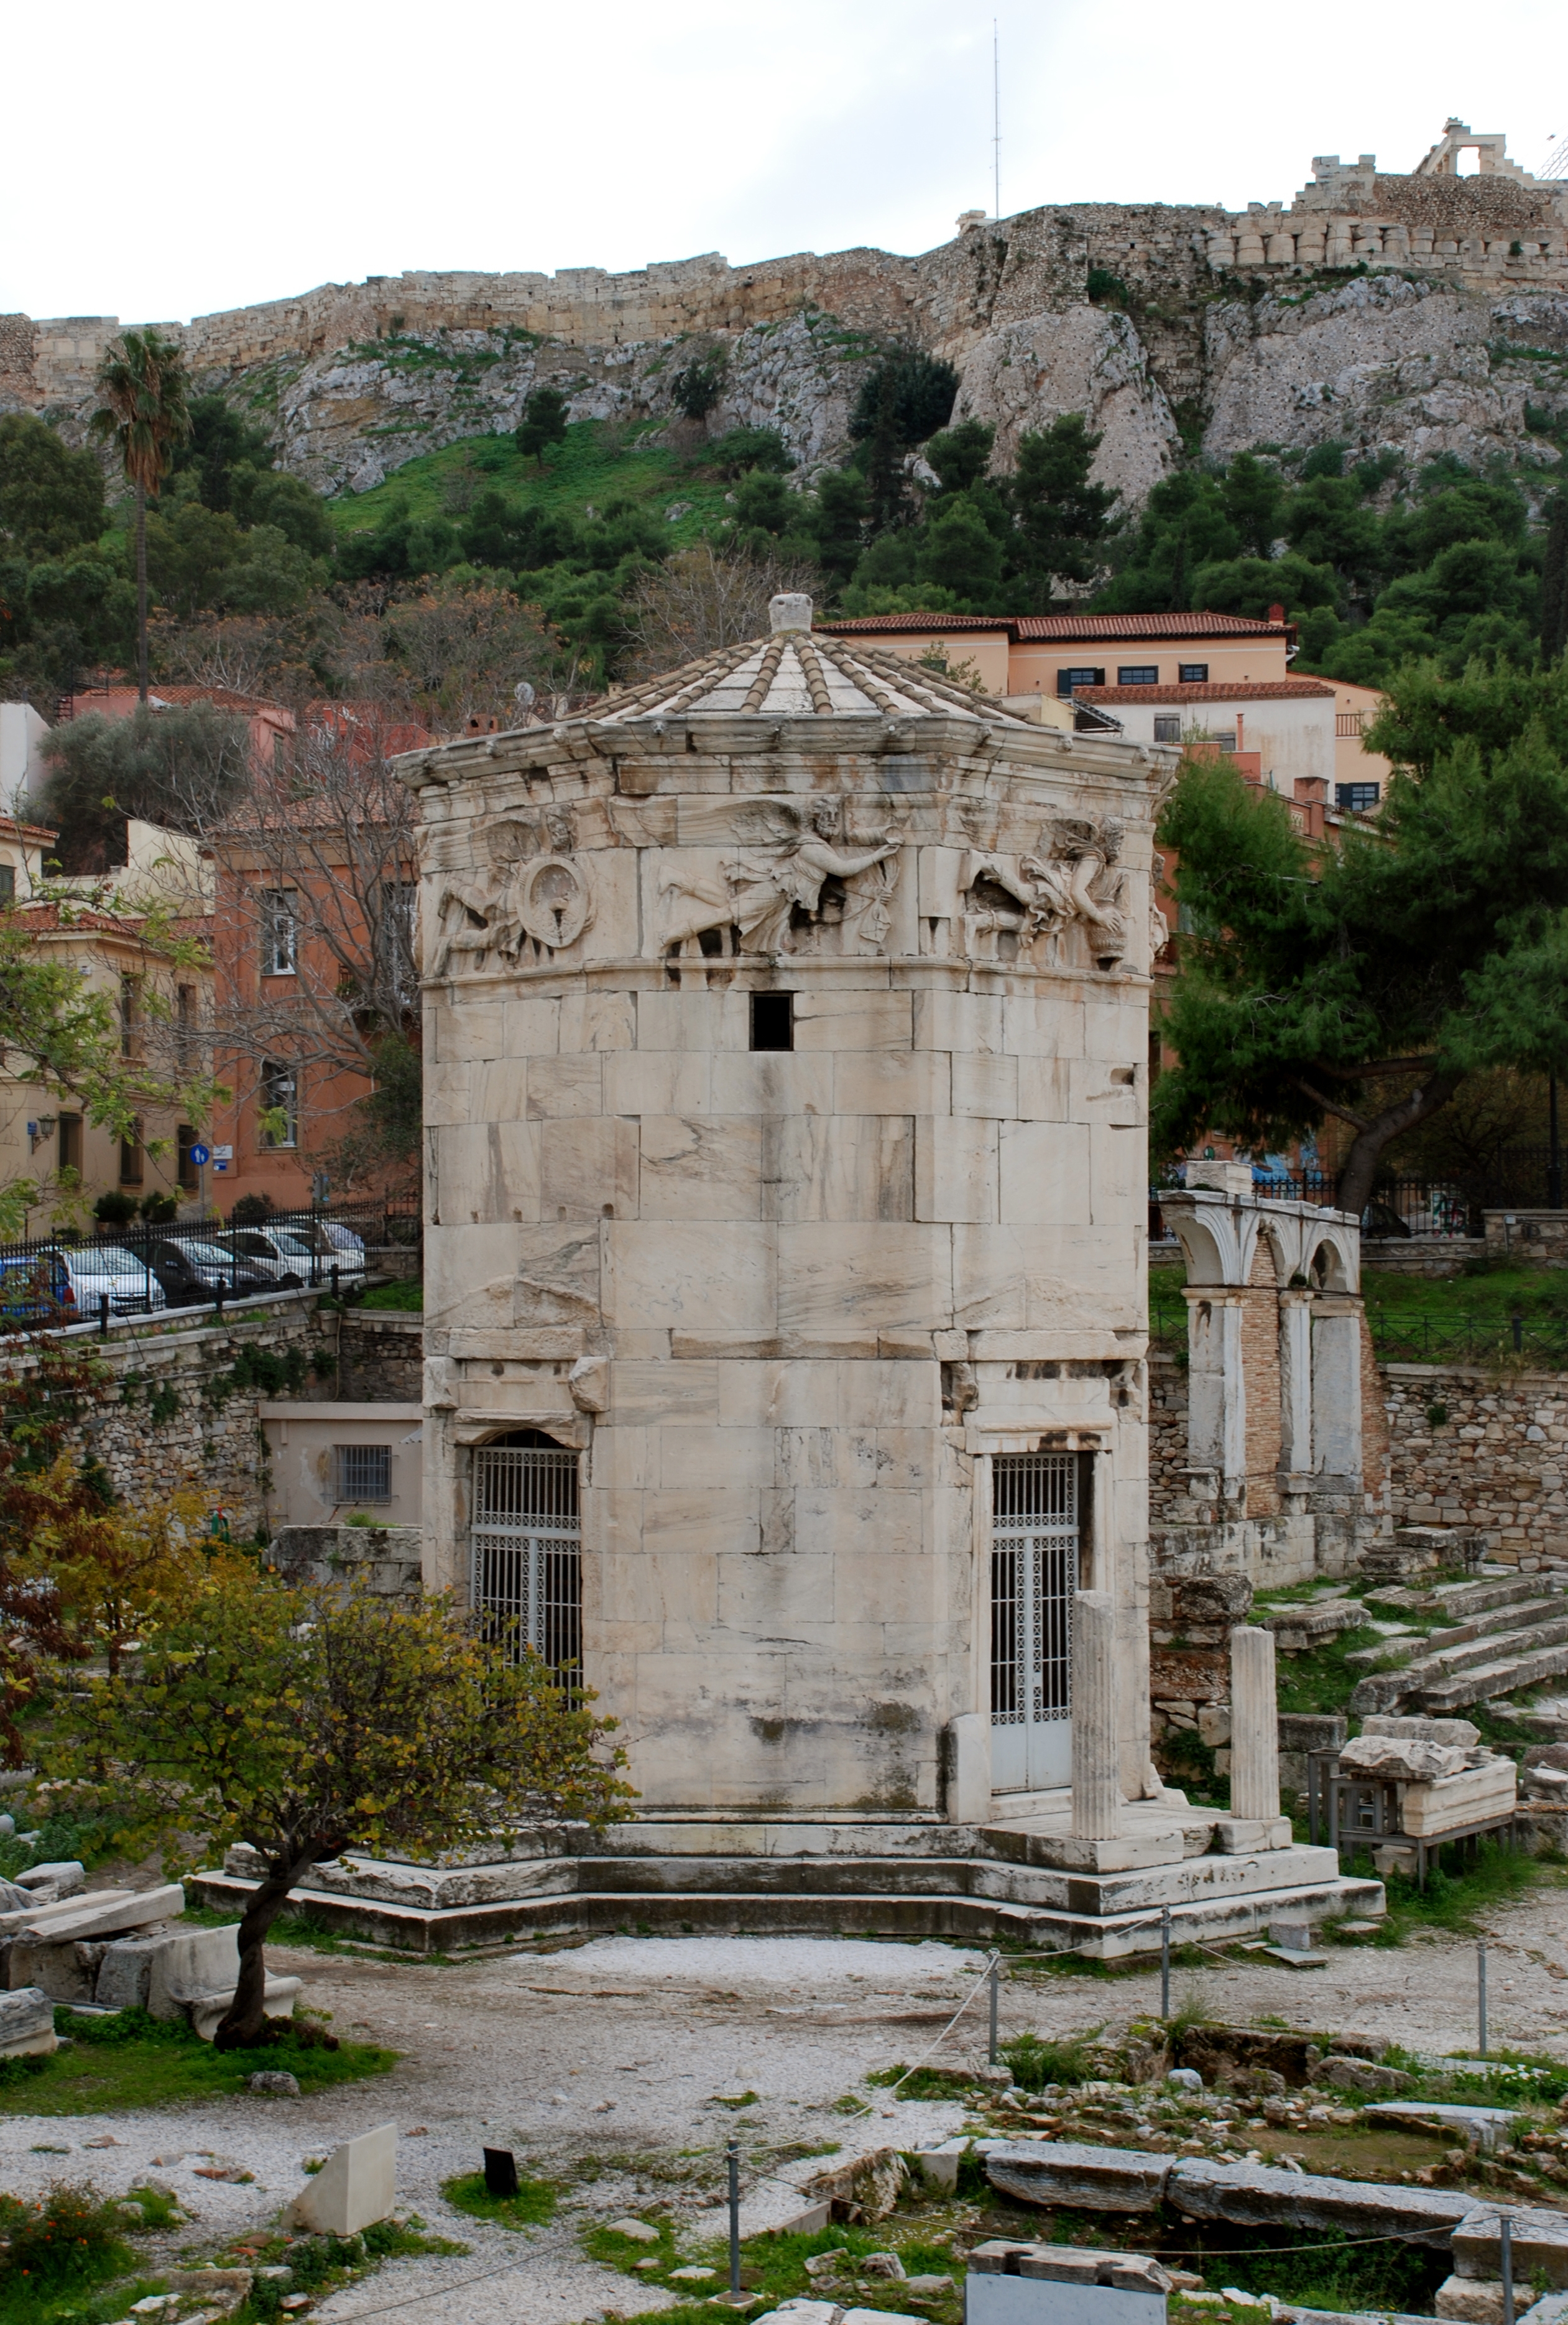 Νέα, σημαντικά ευρήματα στους αρχαιολογικούς χώρους  Κεραμεικού και Ρωμαϊκής Αγοράς της Αθήνας